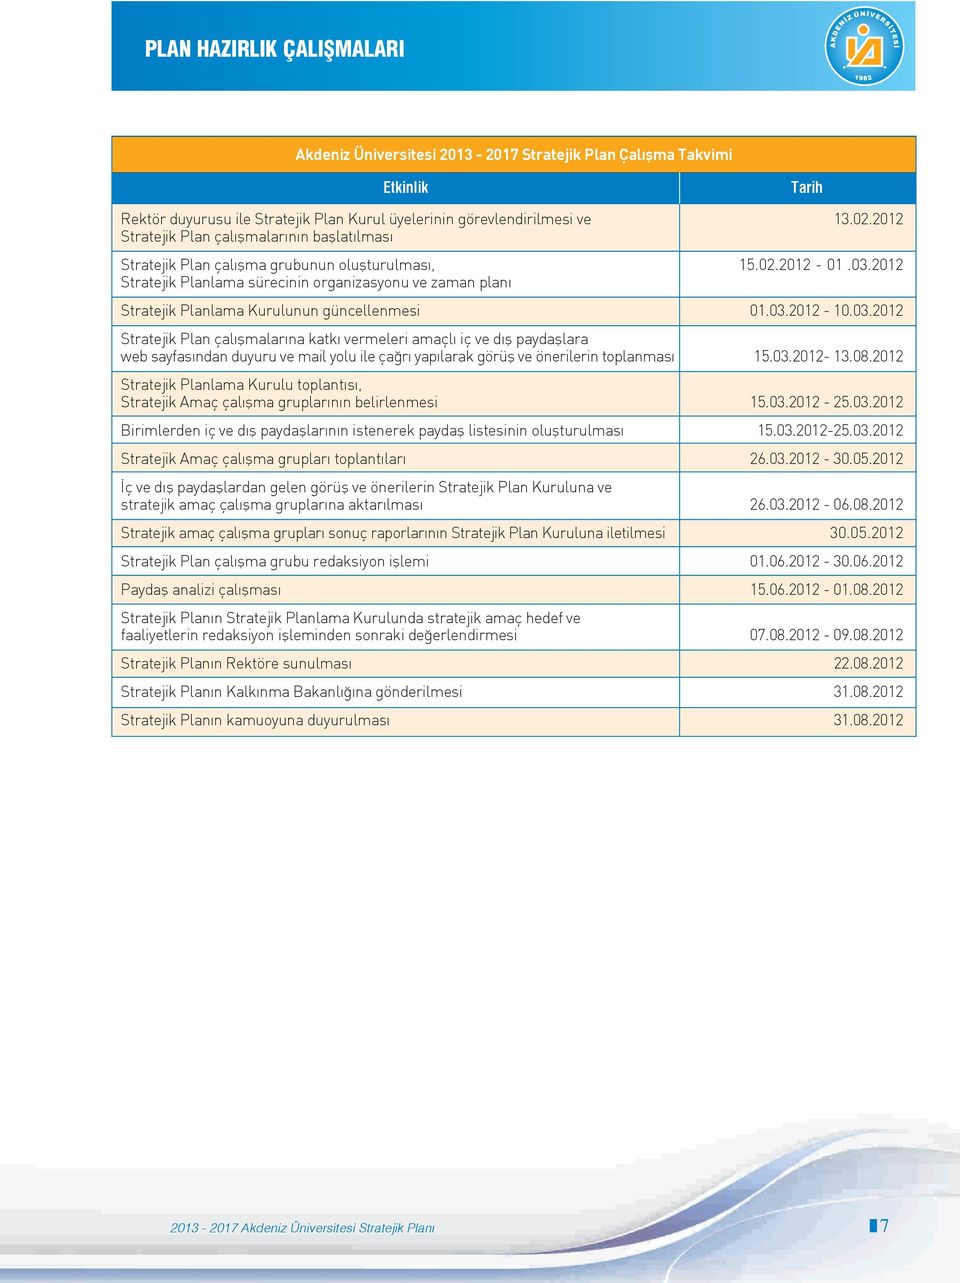 2012 Stratejik Planlama sürecinin organizasyonu ve zaman plan Stratejik Planlama Kurulunun güncellenmesi 01.03.